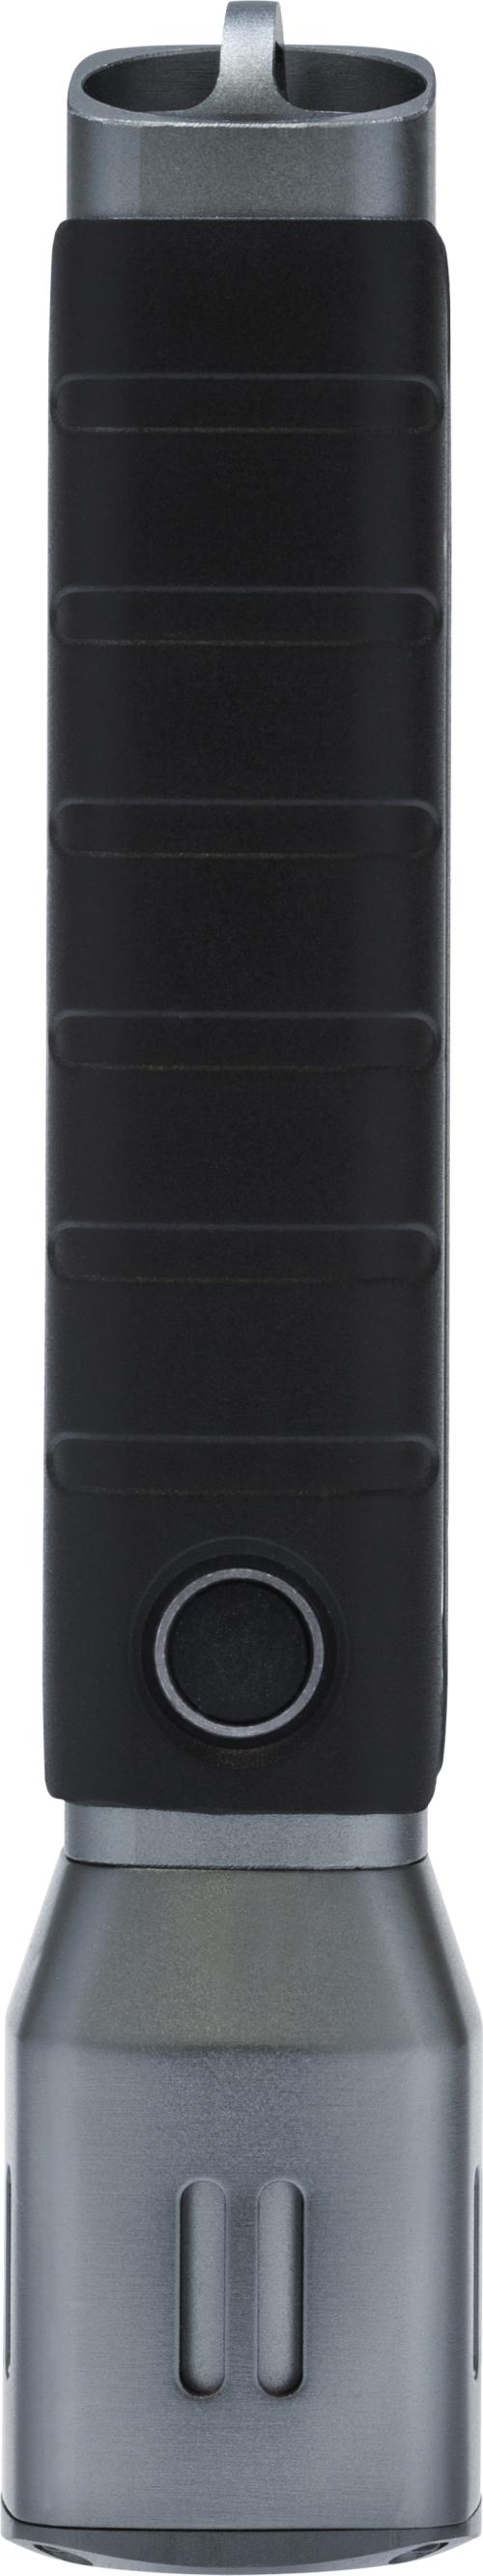 Ficklampa TL-517, 17,2 cm